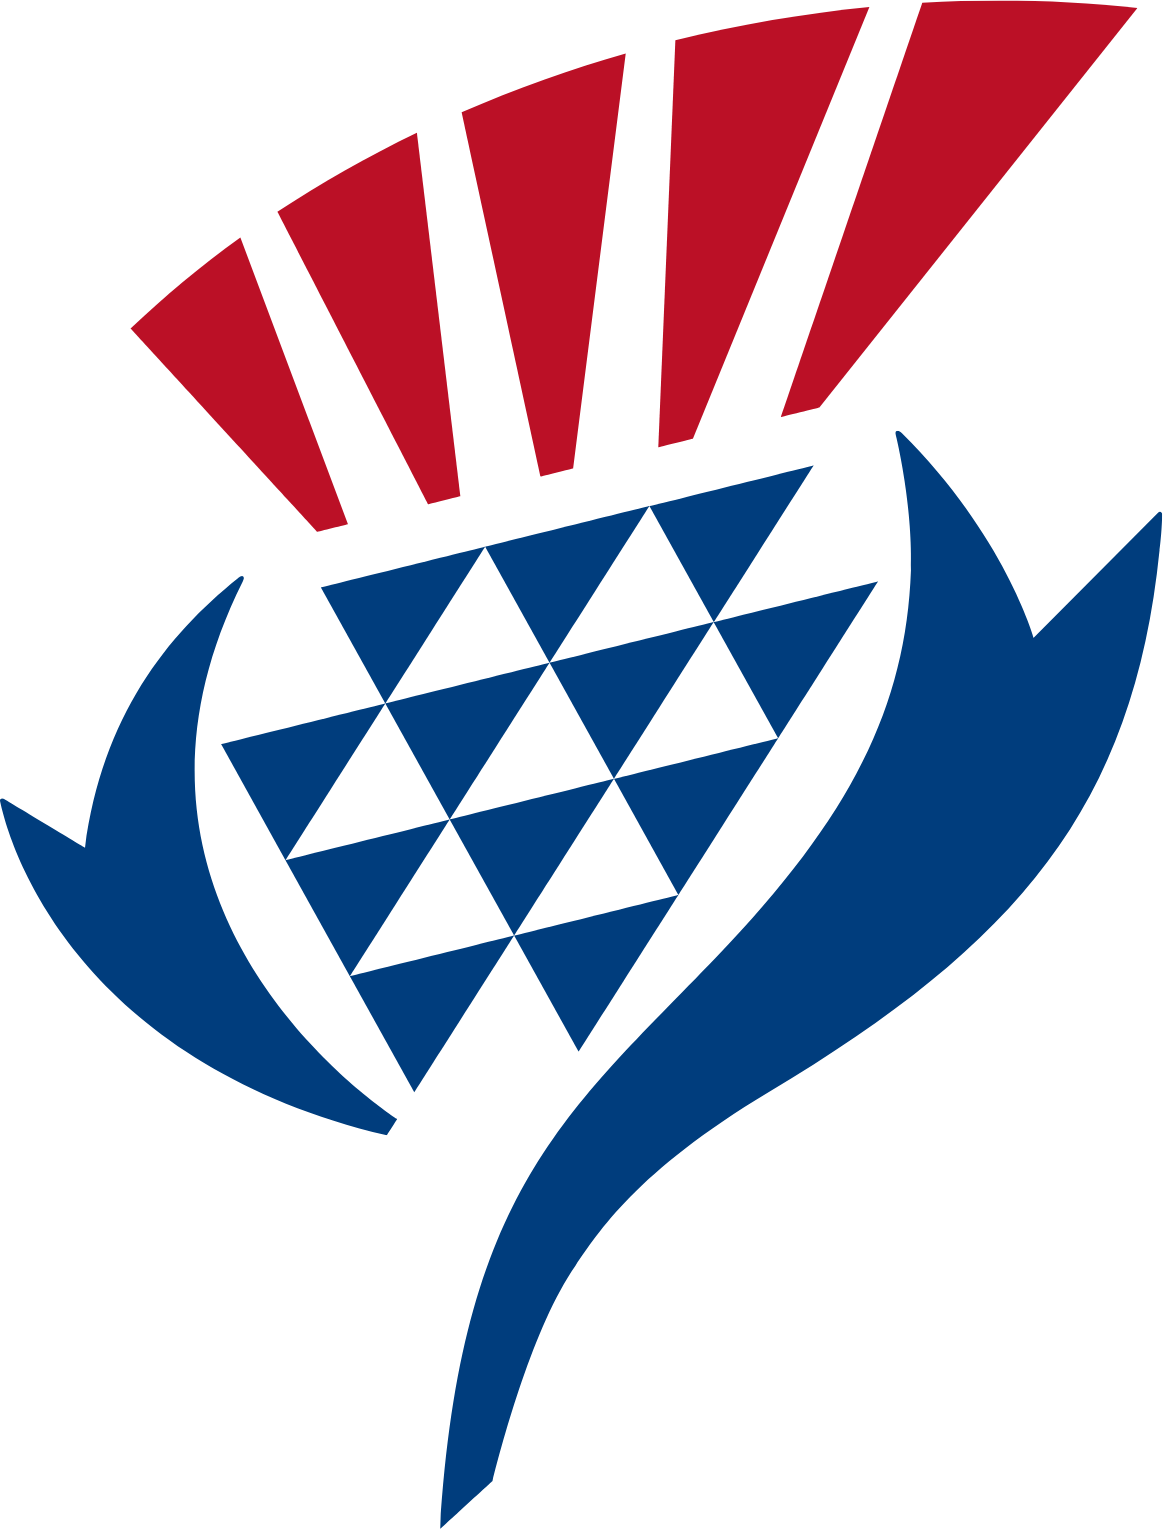 Logo de Jardine Cycle & Carriage au format PNG transparent